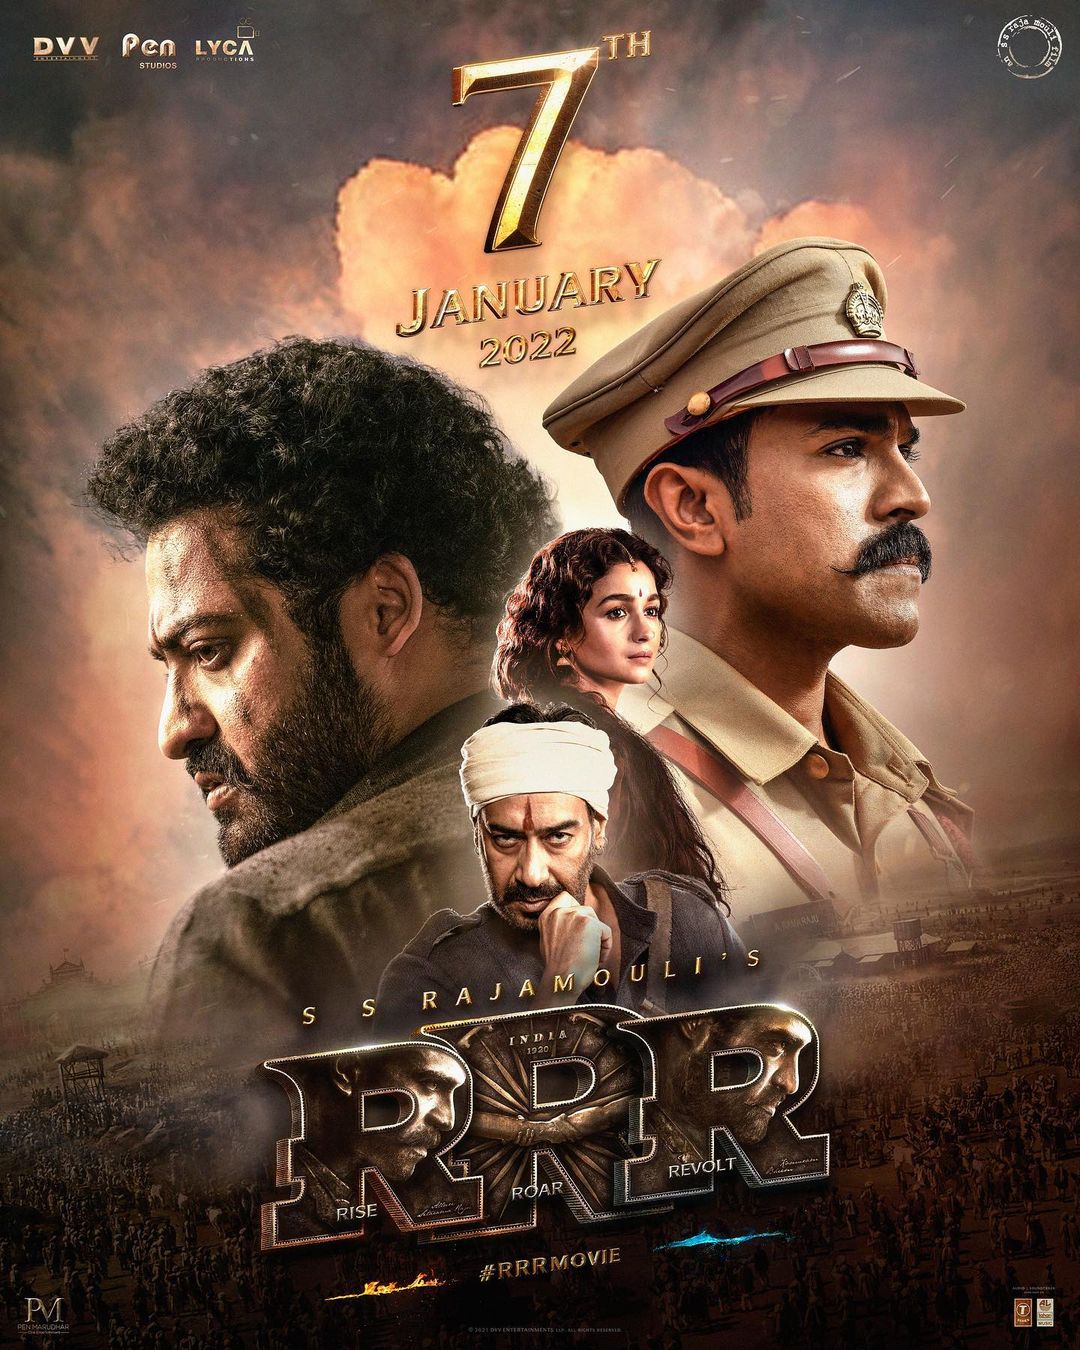 RRR Trailer (Tamil) - NTR, Ram Charan, Ajay Devgn, Alia Bhatt | SS Rajamouli | Jan 7th 2022 2